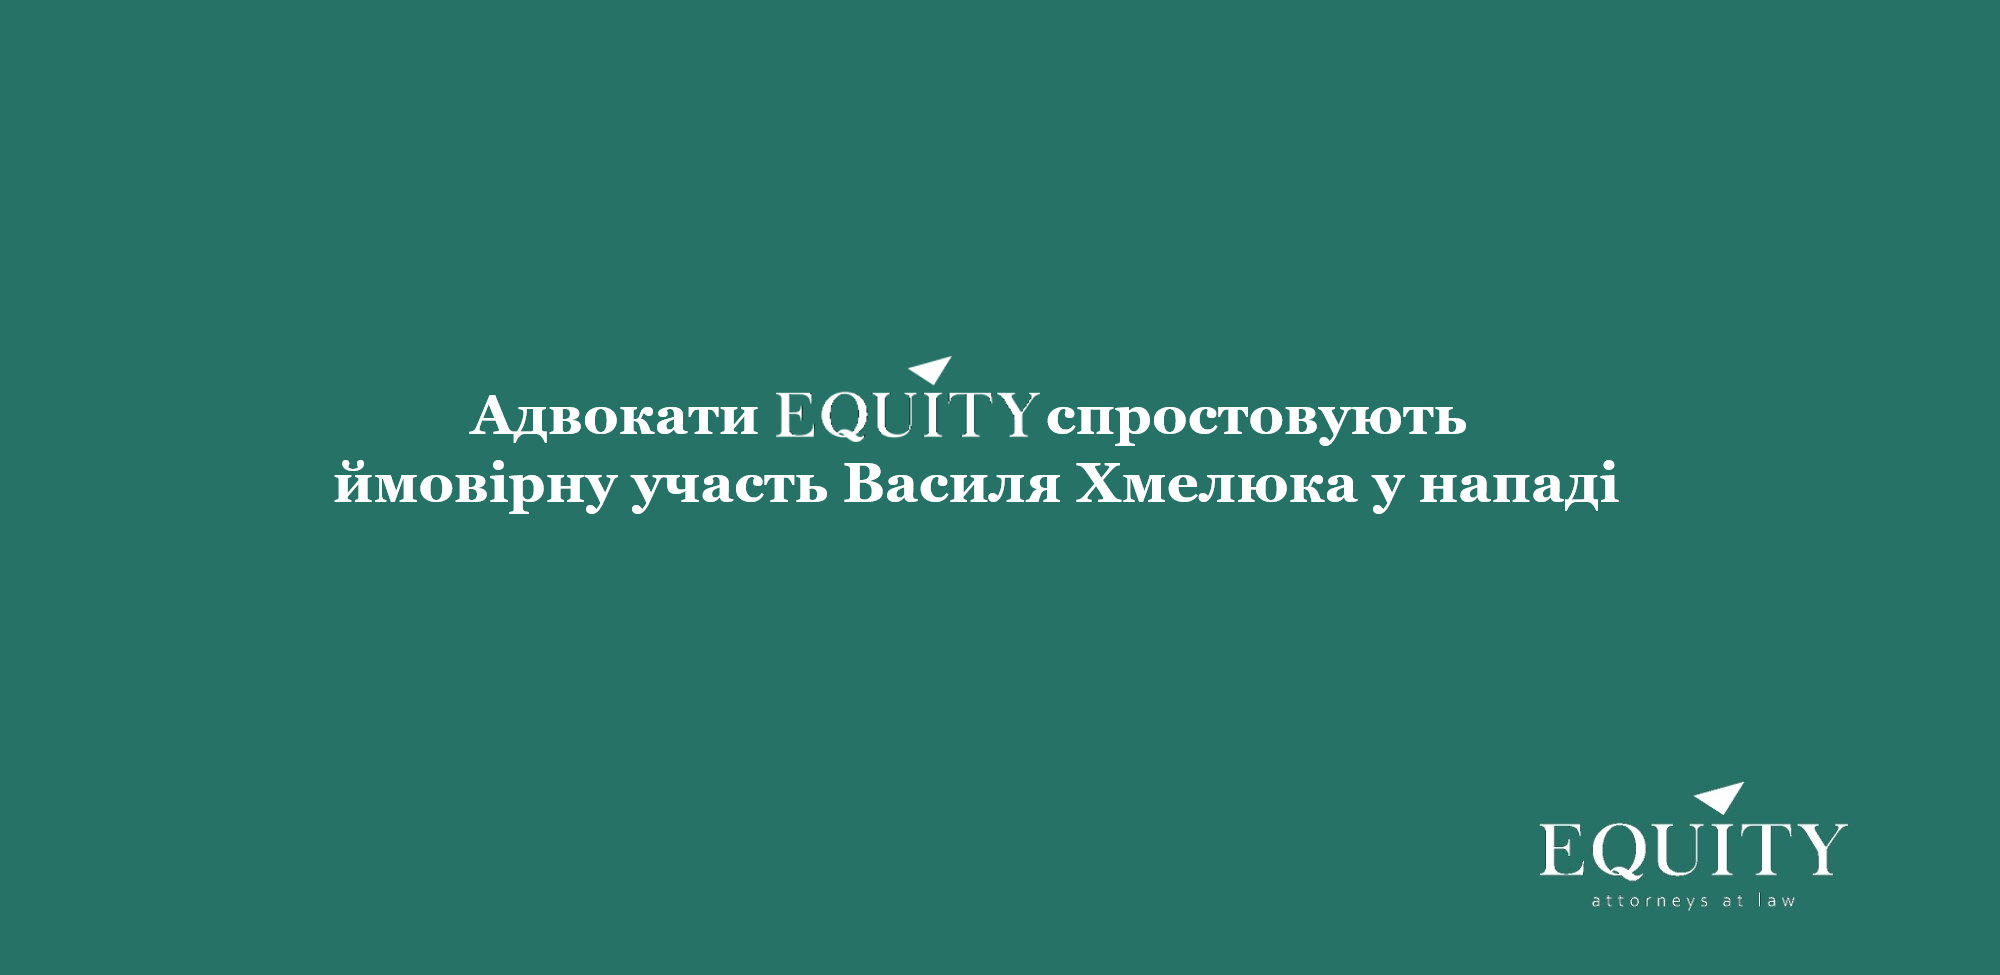 Адвокати <span class="equity">EQUITY</span> спростовують ймовірну участь Василя Хмелюка у нападі